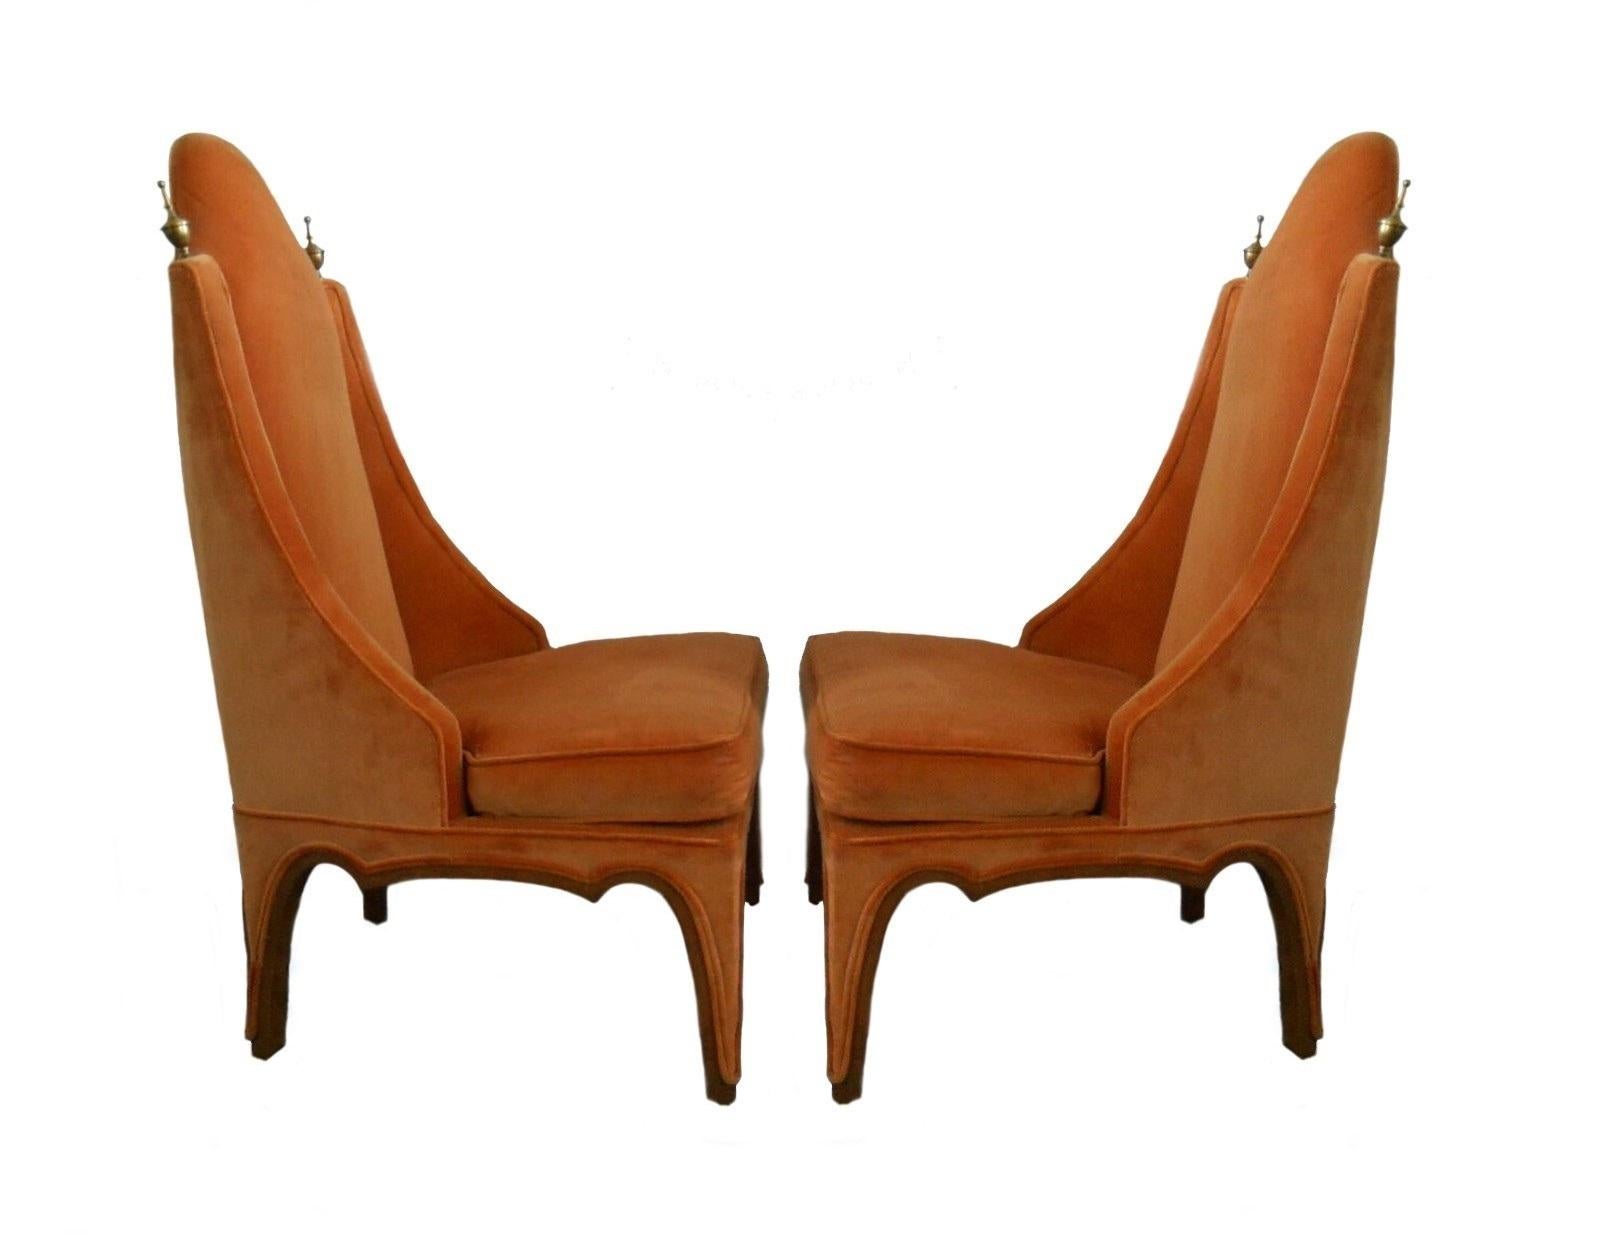 Ungewöhnlich gestaltete Beistell- oder Pantoffelstühle, amerikanisch, 1960er Jahre. Neu gepolstert in einem orangefarbenen Samt mit den Beinen in Walnussholz getrimmt und akzentuiert durch hohe Messing-Finials oben auf jeder Seite des Stuhls zurück.